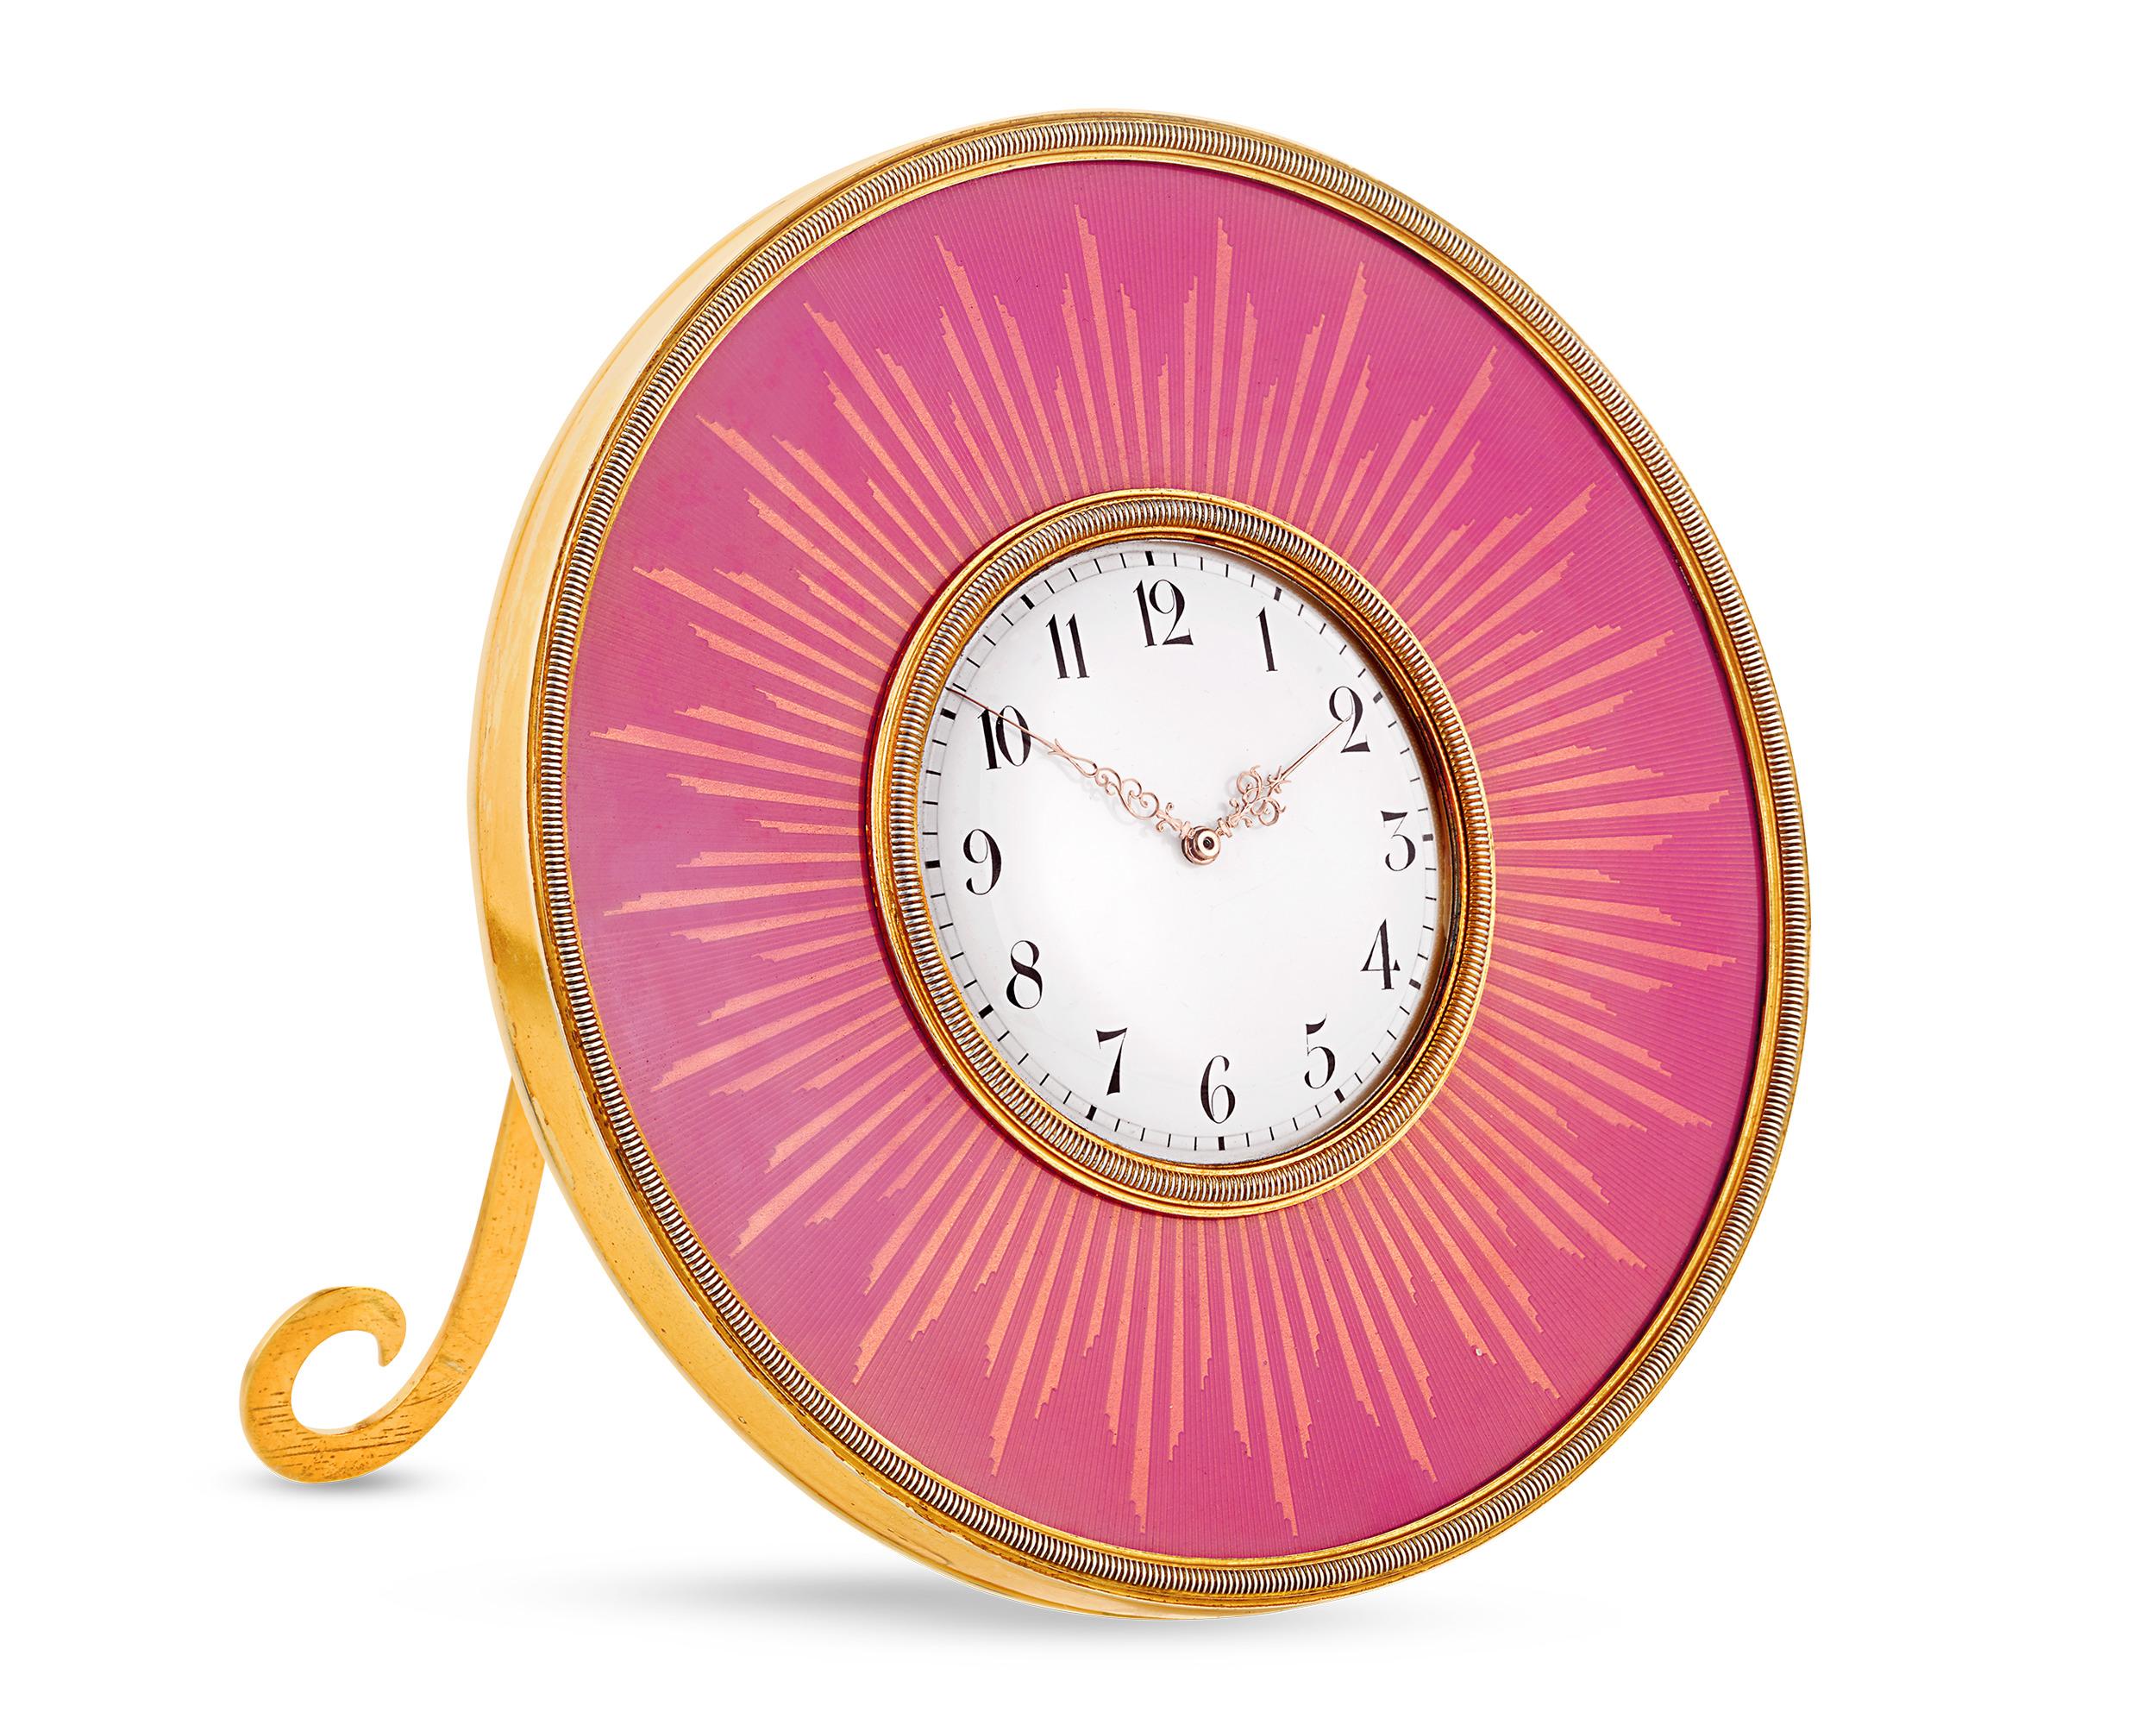 Plus qu'une simple horloge, ce garde-temps de la firme Revere Fabergé est une véritable œuvre d'art. Créée vers 1900 pendant l'âge d'or de Fabergé, cette exquise horloge de table circulaire est composée d'émail rose translucide rehaussé de dorures